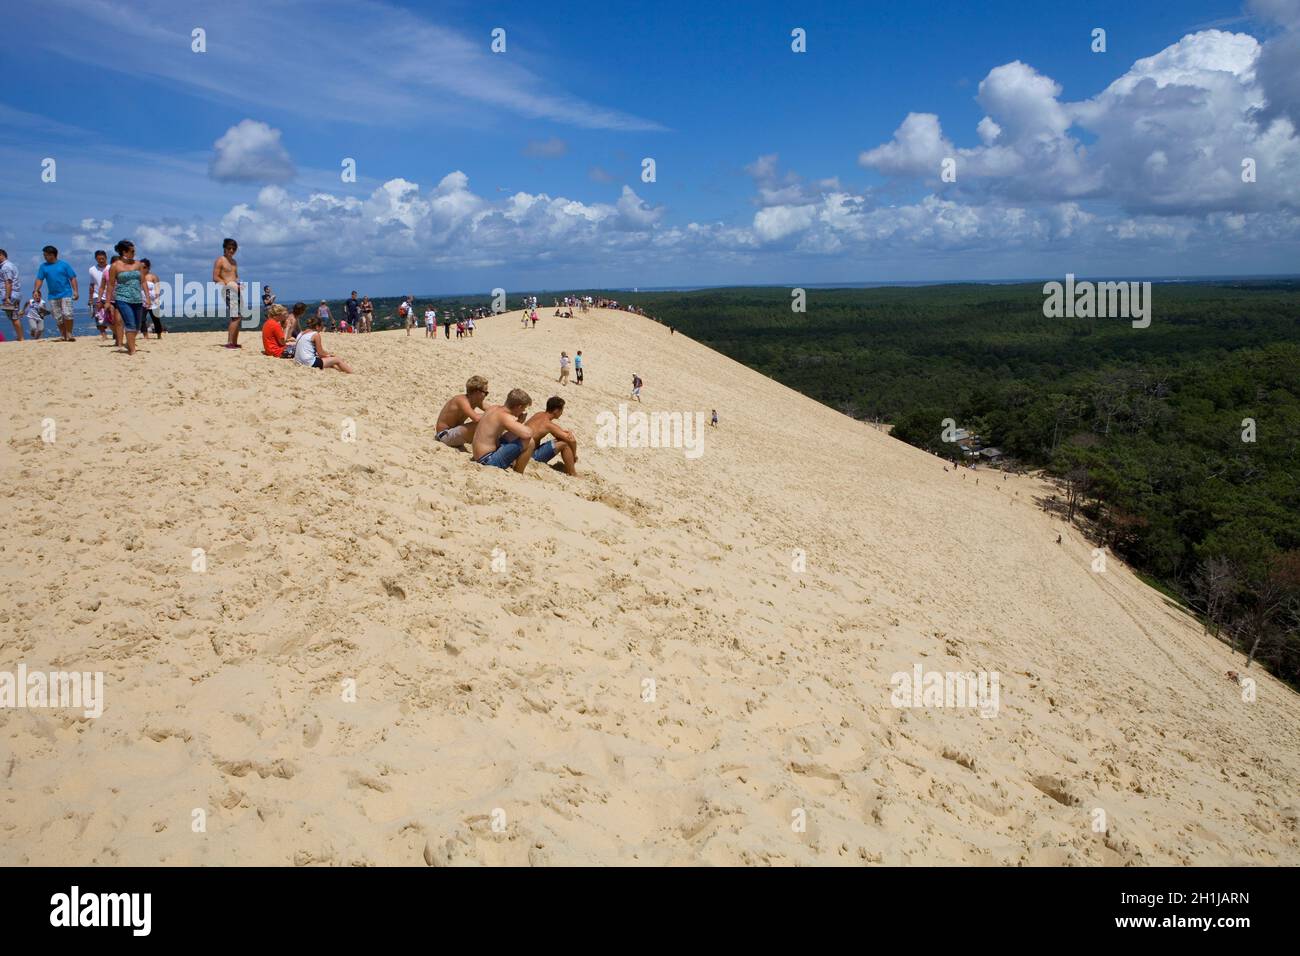 PYLA SUR MER, FRANKREICH - 8. AUGUST: Besucher der berühmten Düne von Pyla, der höchsten Sanddüne Europas, am 8. August 2012 in Pyla Sur Mer, Frankreich. Stockfoto